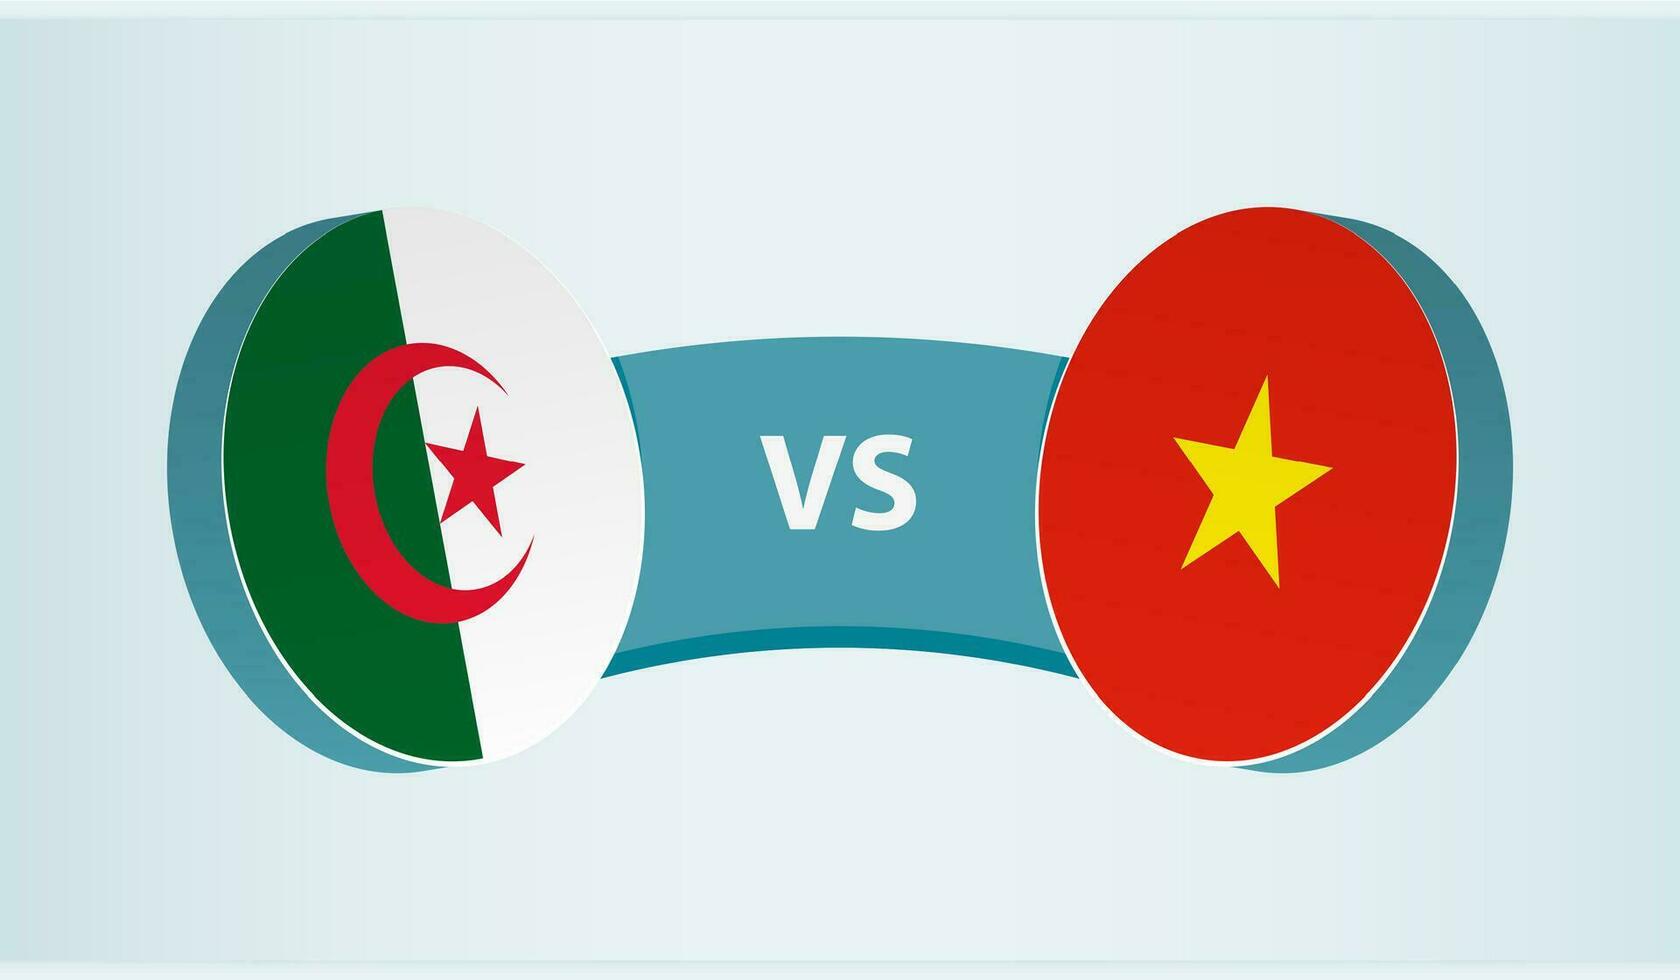 Algeria versus Vietnam, team sports competition concept. vector